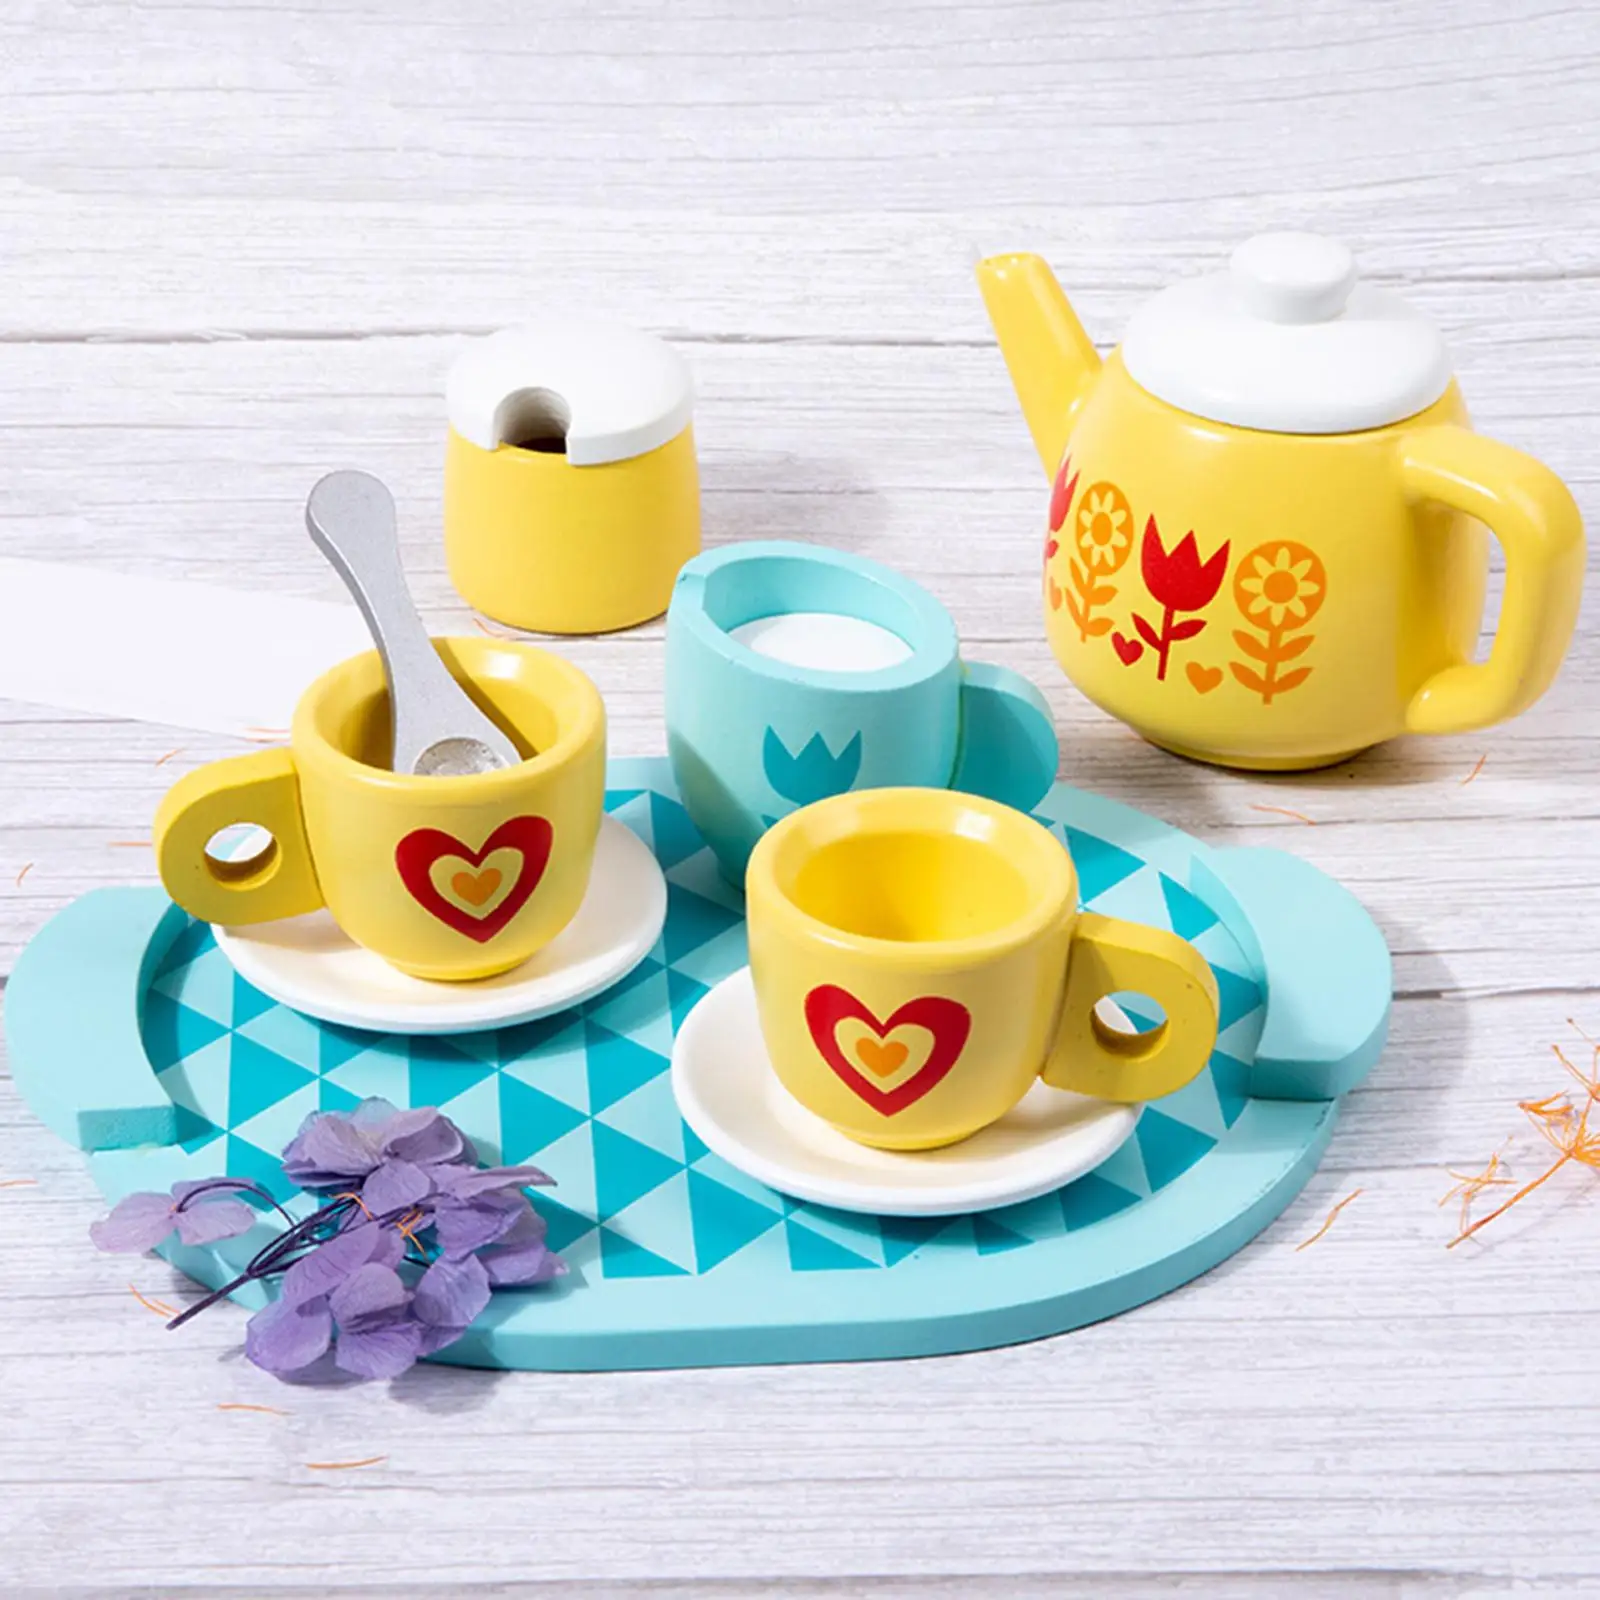 8x Montessori Toy Kitchen Playset Kitchen Tableware Set Wooden Tea Set for Birthday Party Gift Kids Tea Party Tea Set Toddlers